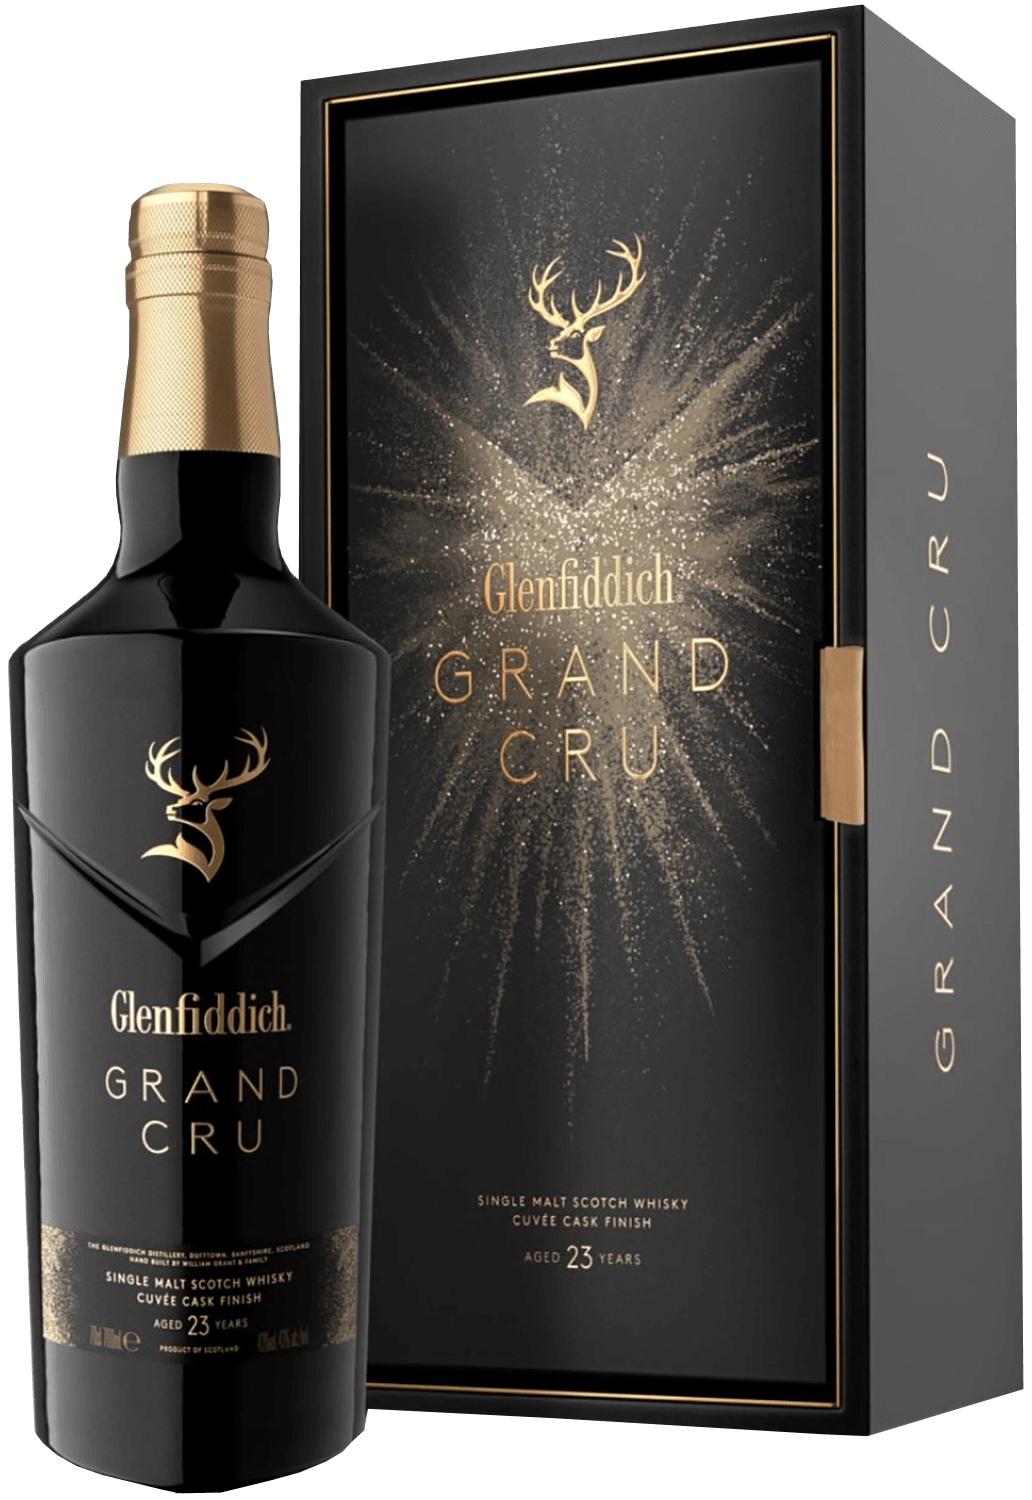 Glenfiddich Grand Cru 23 y.o. Single Malt Scotch Whisky (gift box) glenfiddich grand cru 23 y o single malt scotch whisky gift box